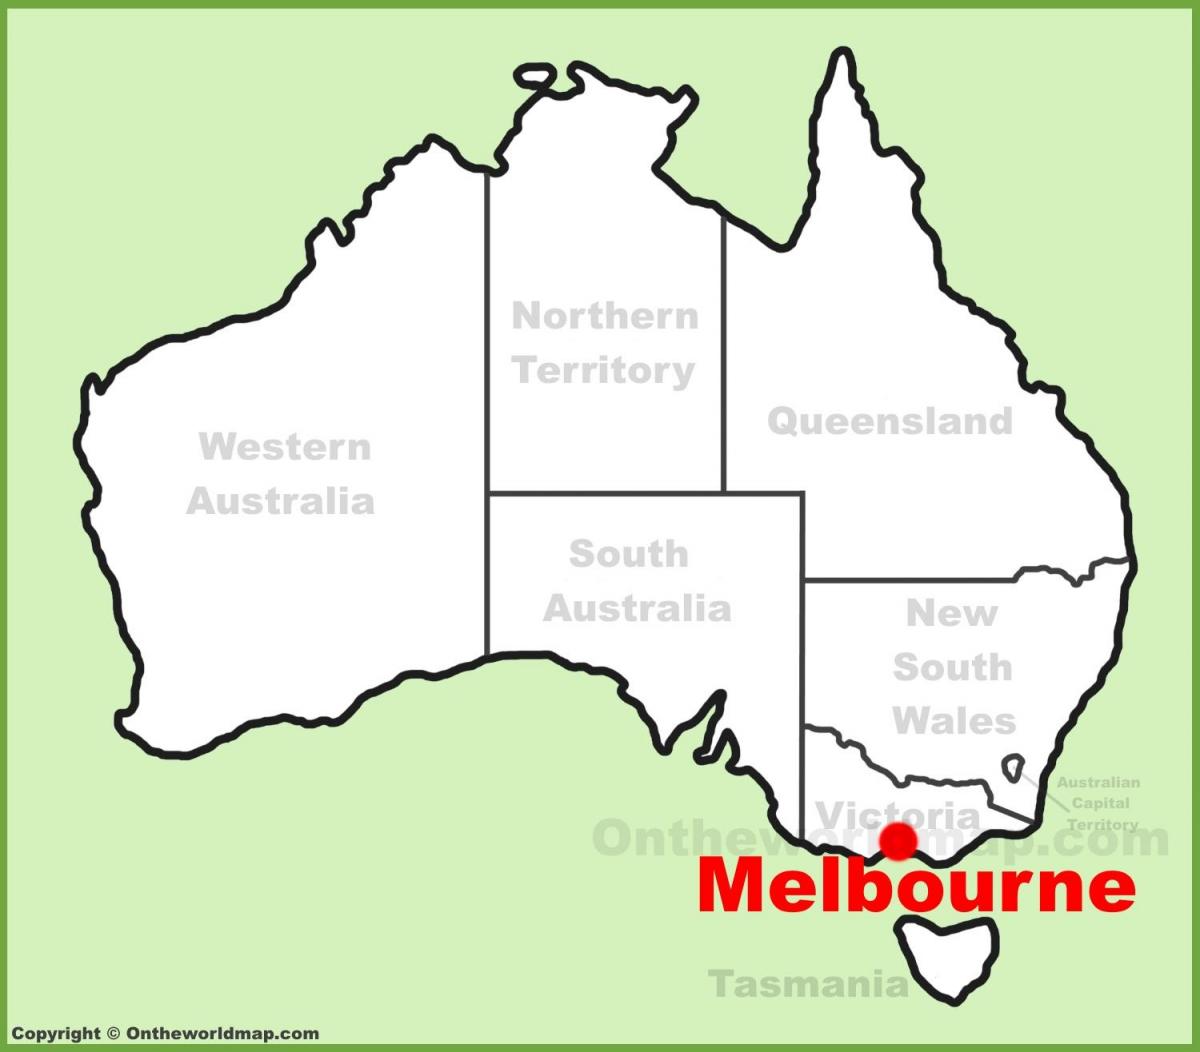 نقشه ملبورن استرالیا